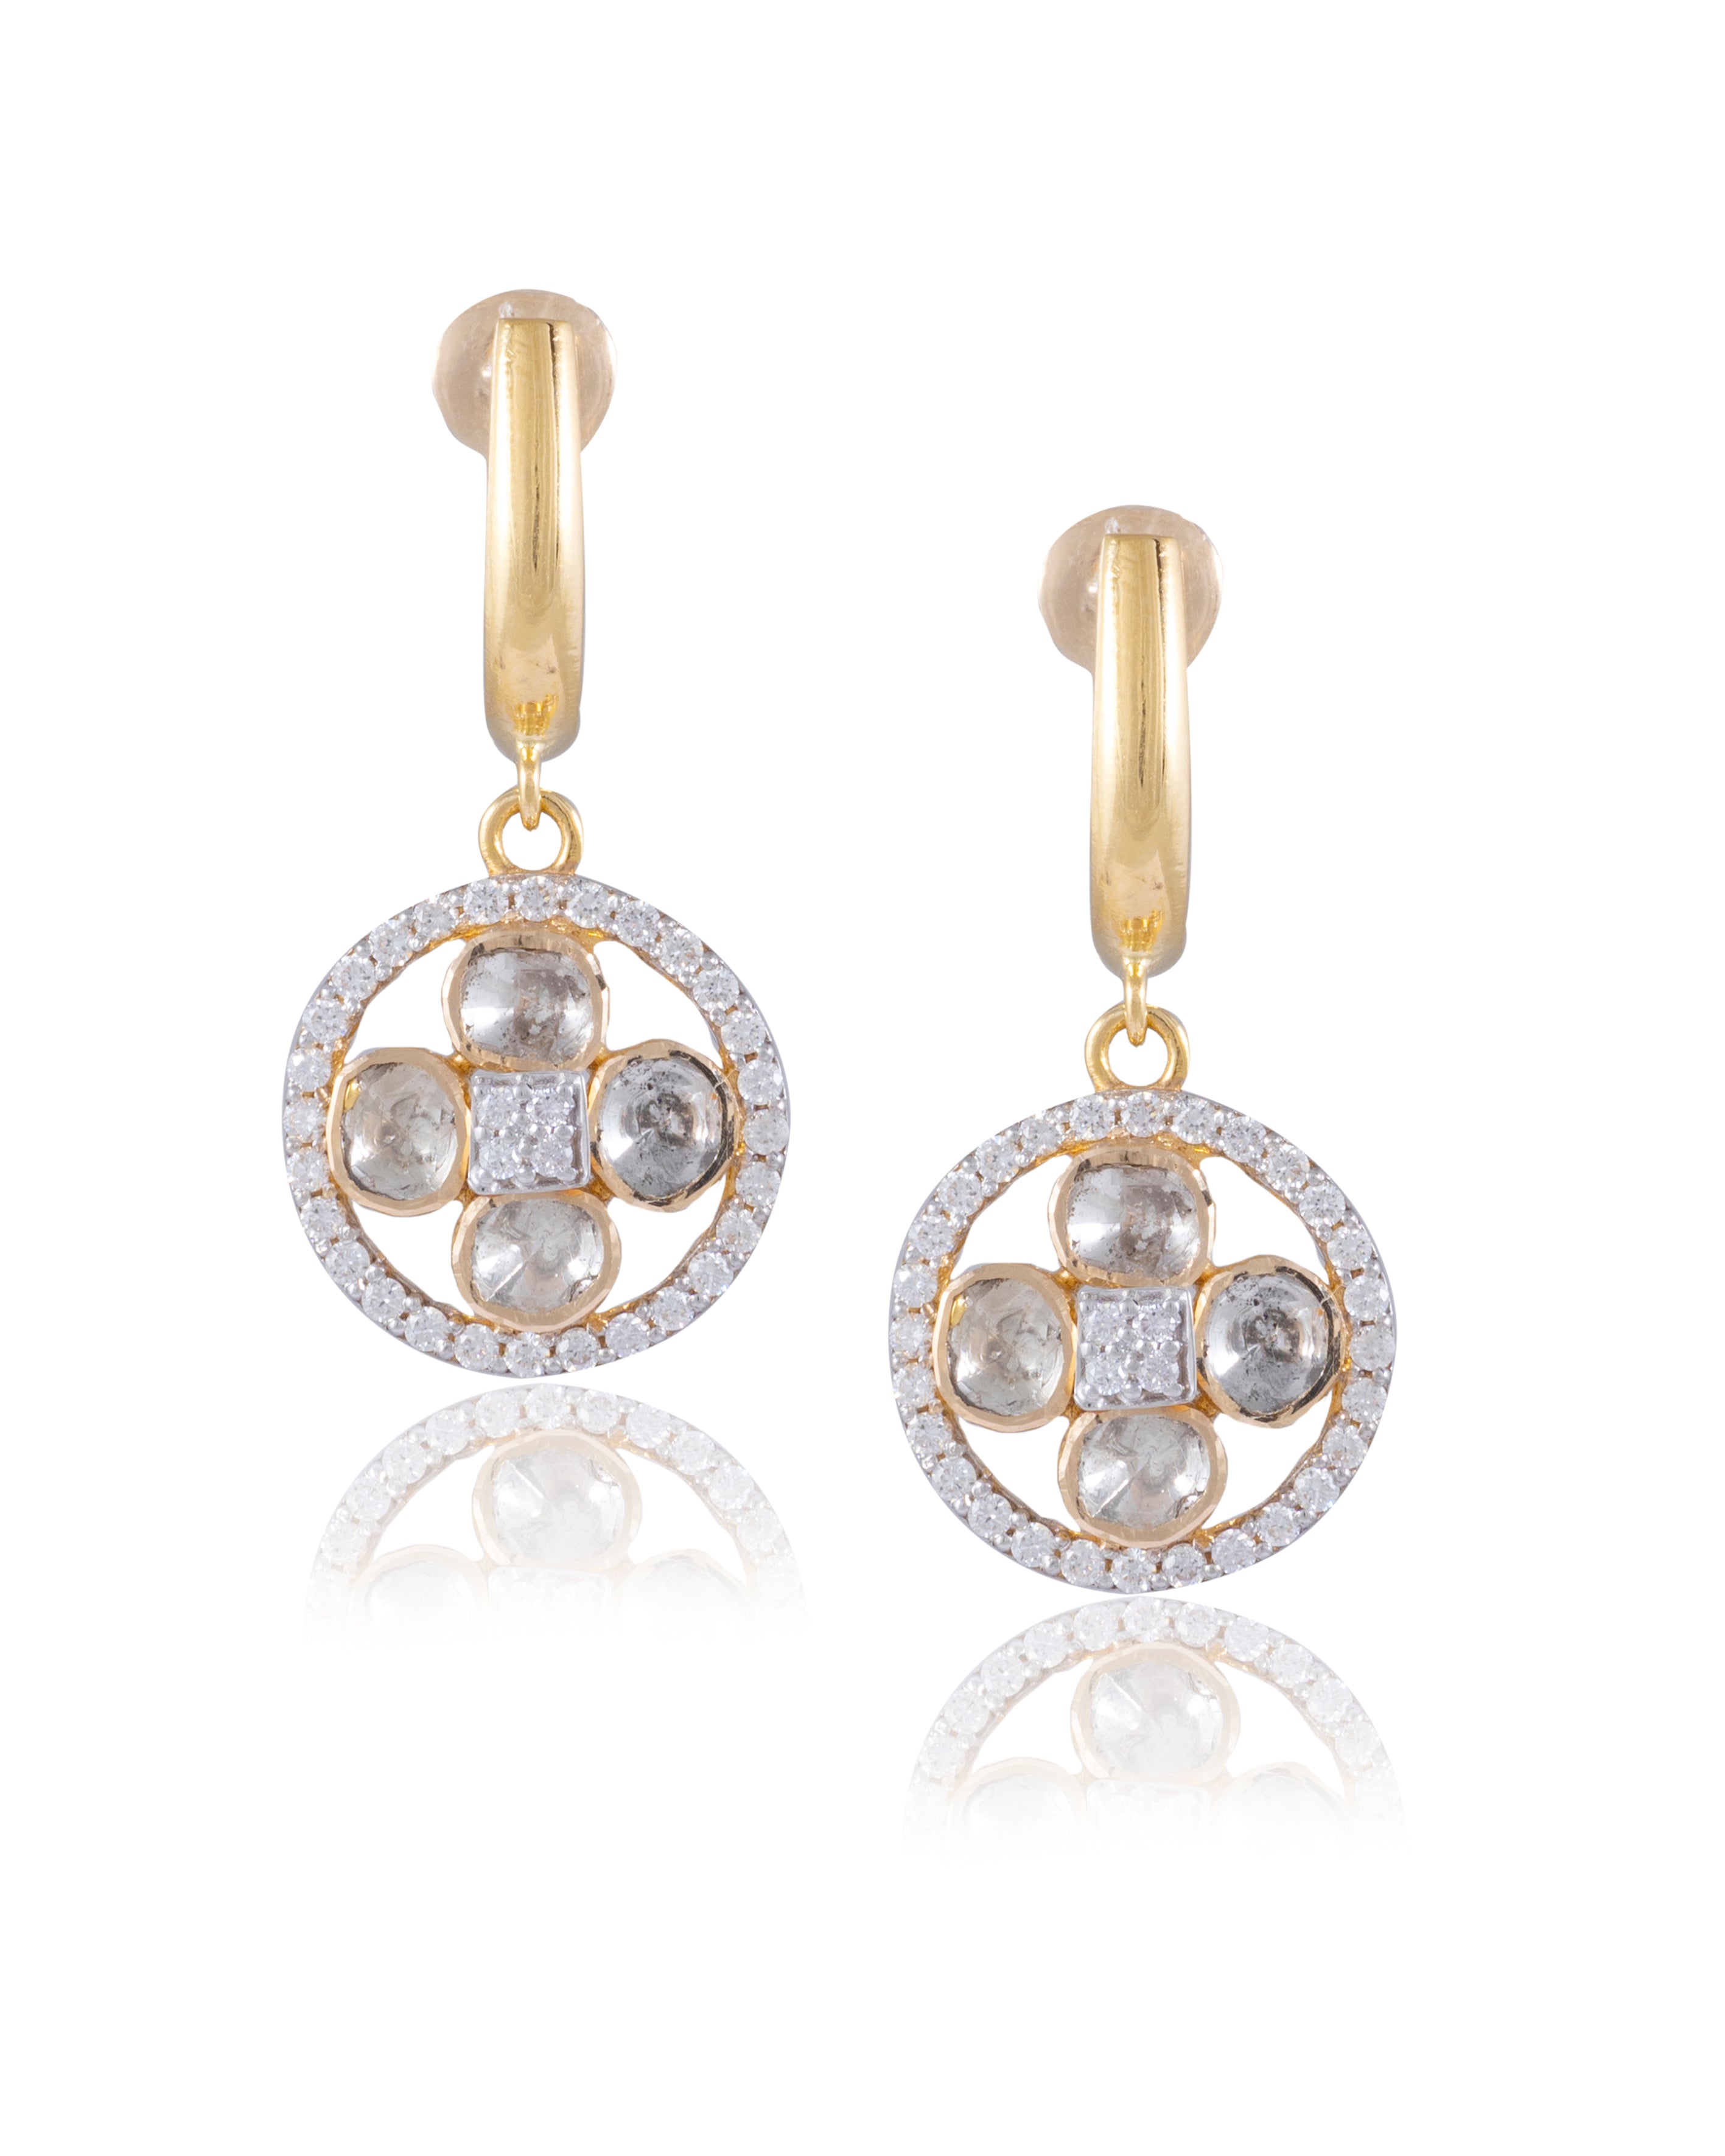 Diamond Jewellery Showroom in Delhi | Diamond jewelry set, Diamond earrings  design, Fancy jewellery